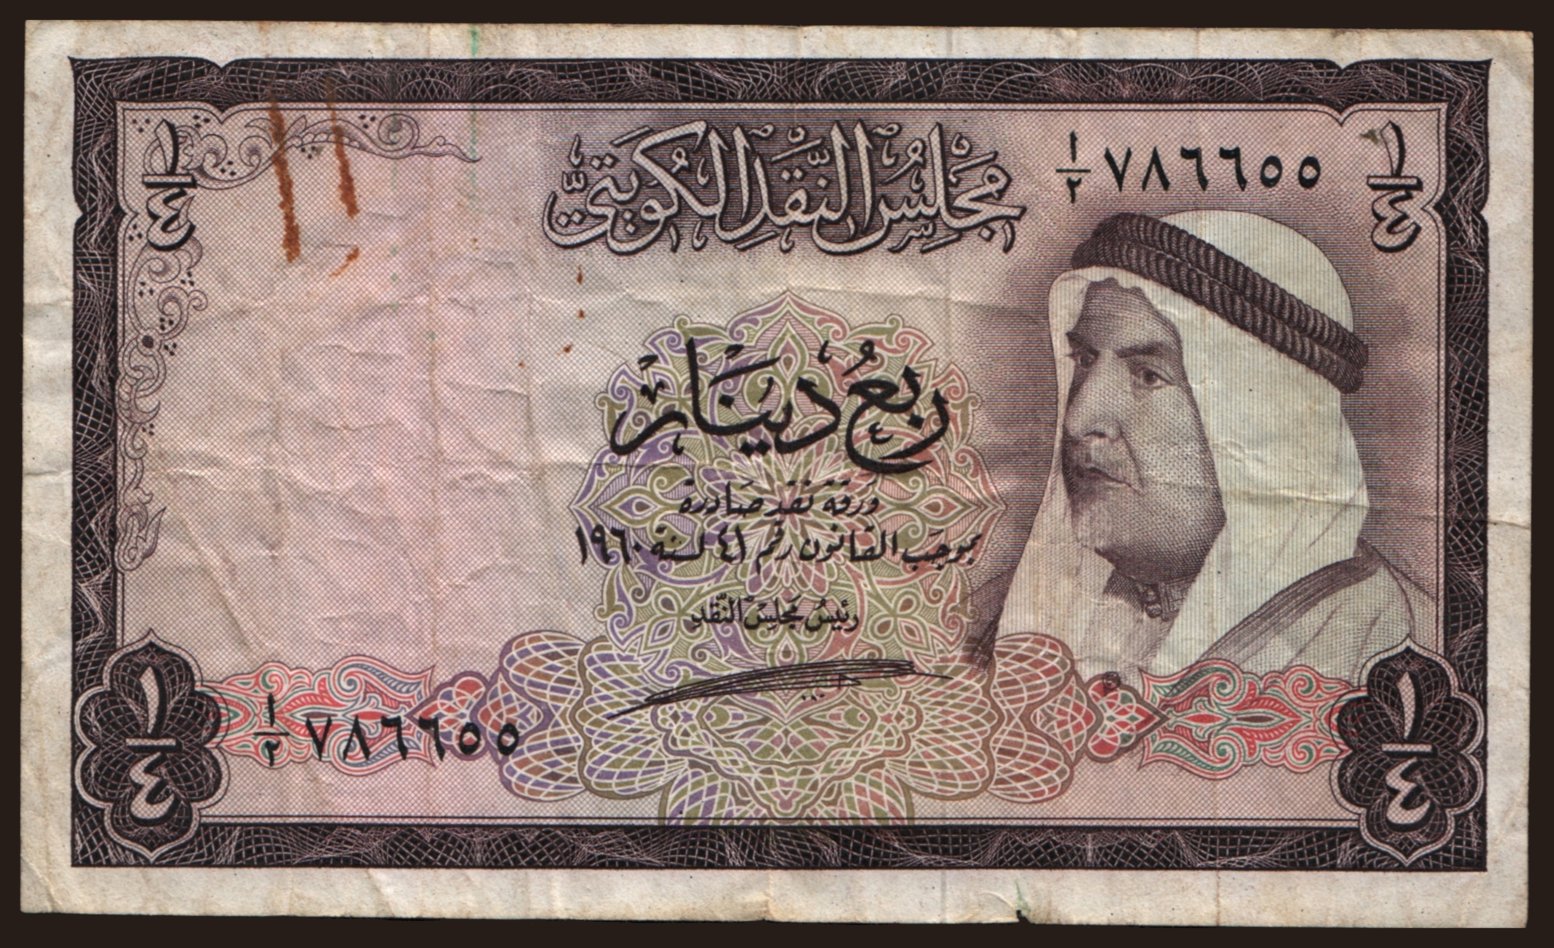 1/4 dinar, 1960